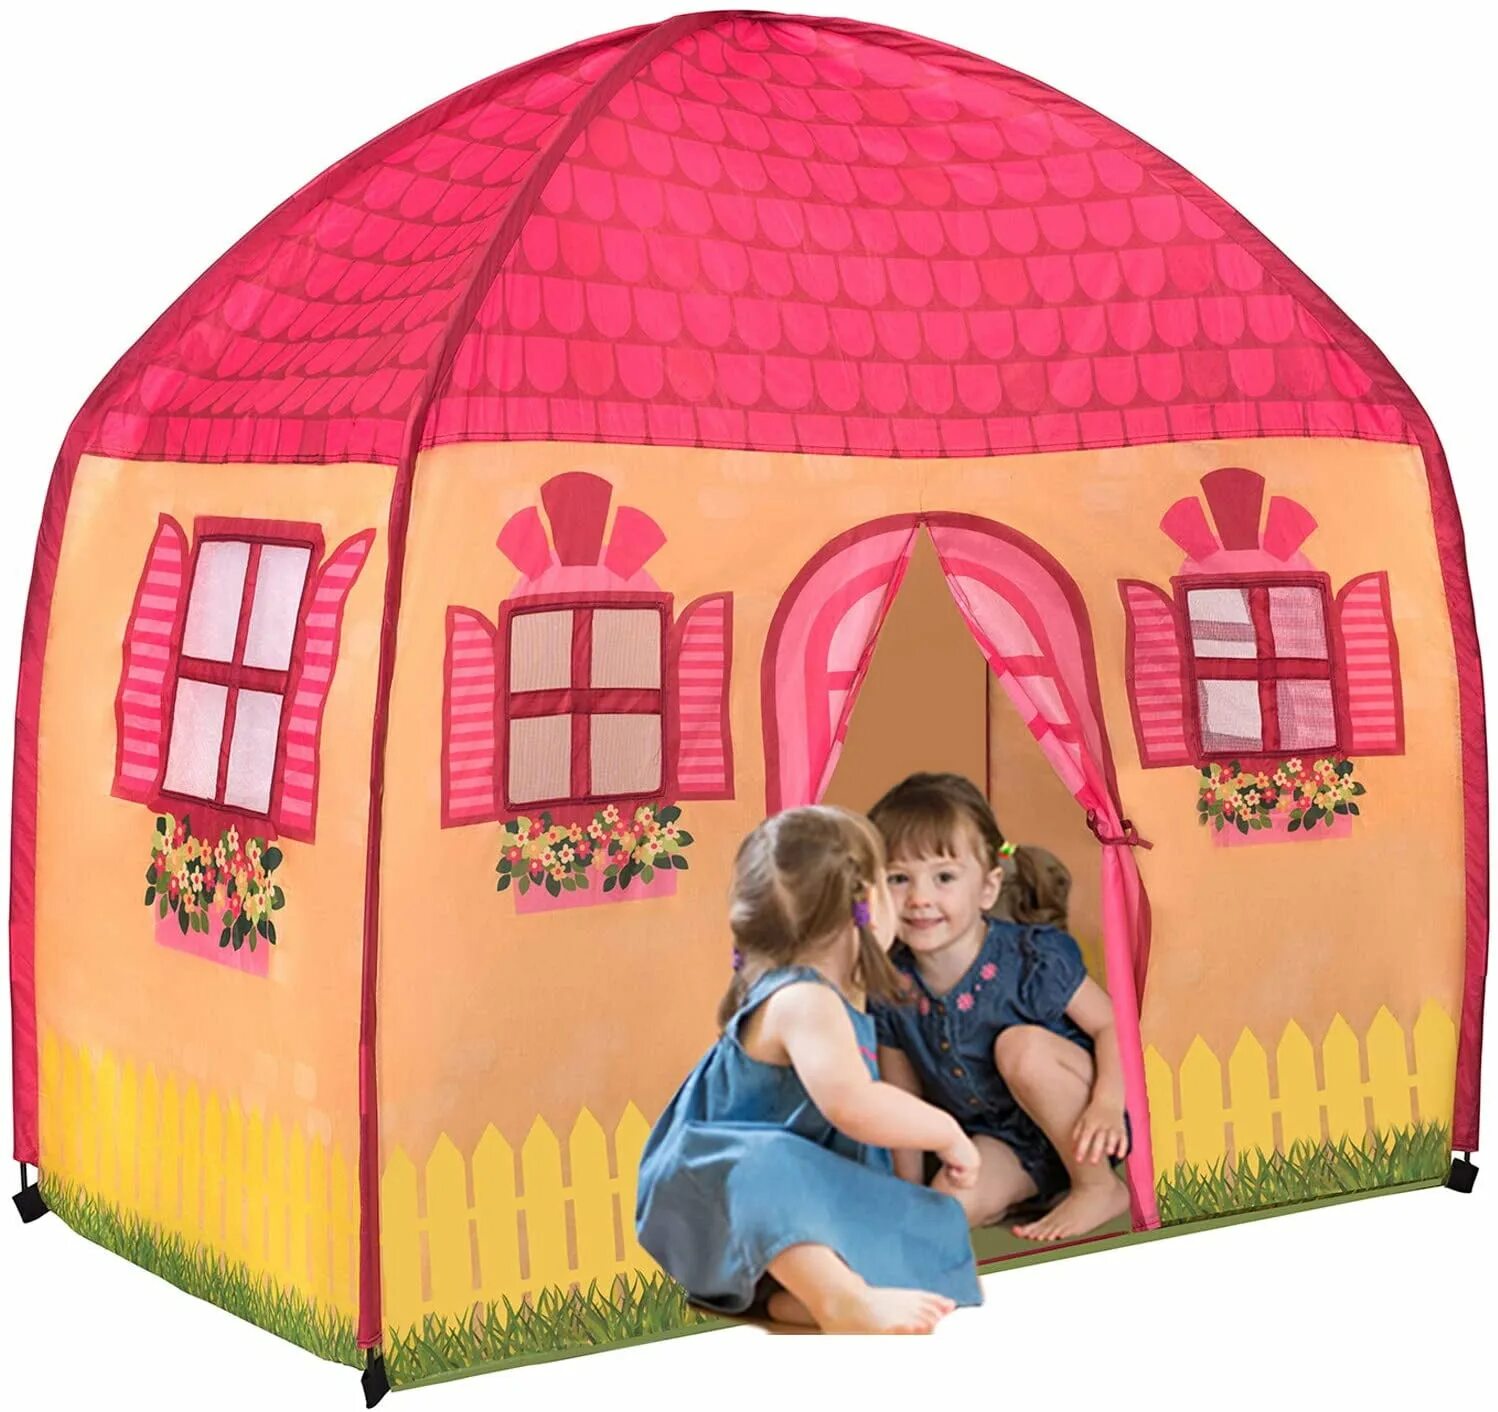 Палатка дом купить. Play Tent домик. Домик палатка для девочки. Детская палатка-домик игровая. Детский палаточный домик.